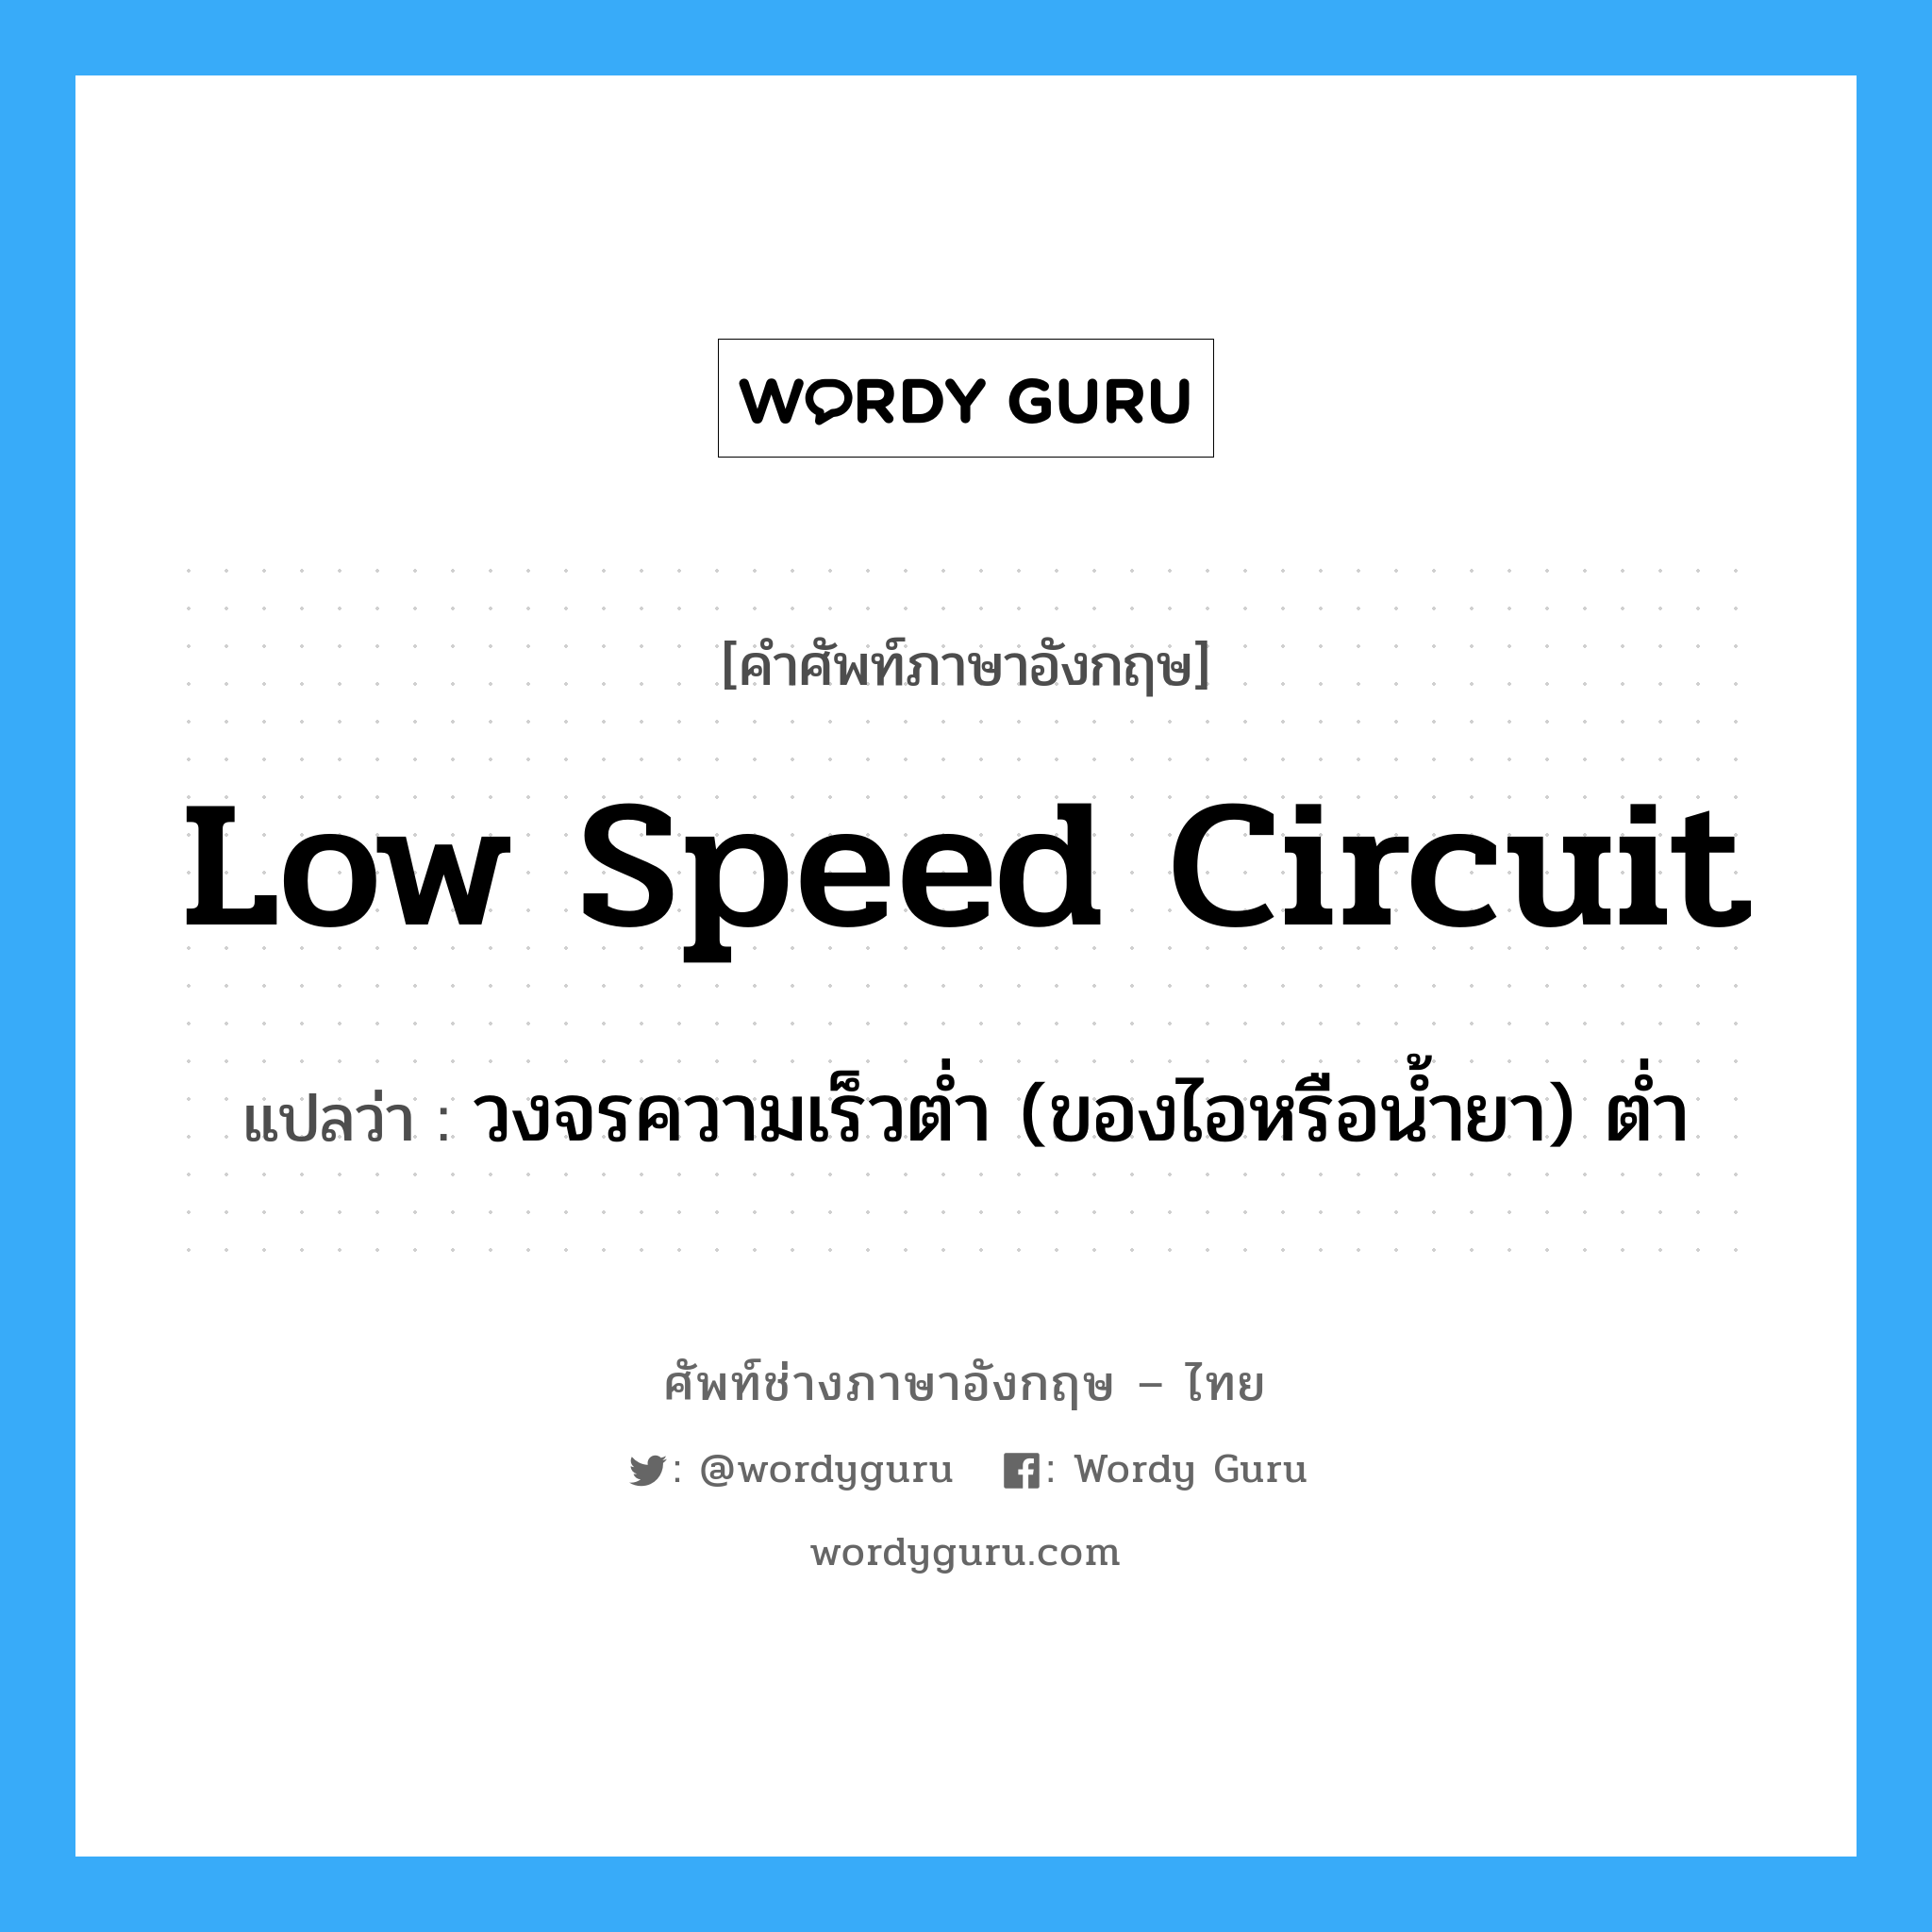 low speed circuit แปลว่า?, คำศัพท์ช่างภาษาอังกฤษ - ไทย low speed circuit คำศัพท์ภาษาอังกฤษ low speed circuit แปลว่า วงจรความเร็วต่ำ (ของไอหรือน้ำยา) ต่ำ